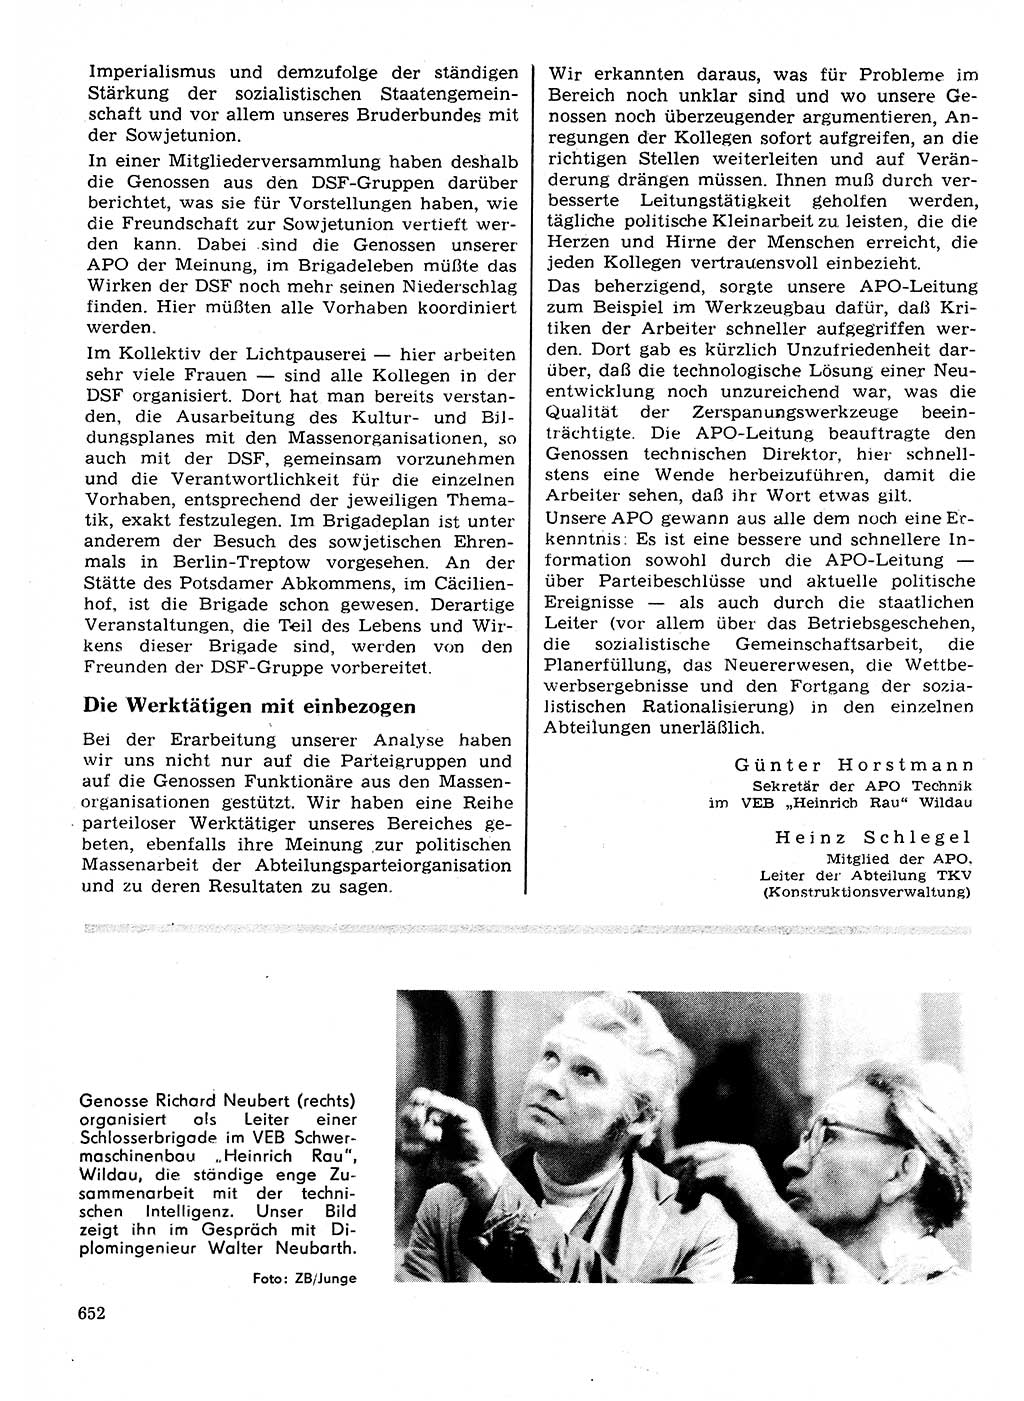 Neuer Weg (NW), Organ des Zentralkomitees (ZK) der SED (Sozialistische Einheitspartei Deutschlands) für Fragen des Parteilebens, 27. Jahrgang [Deutsche Demokratische Republik (DDR)] 1972, Seite 652 (NW ZK SED DDR 1972, S. 652)